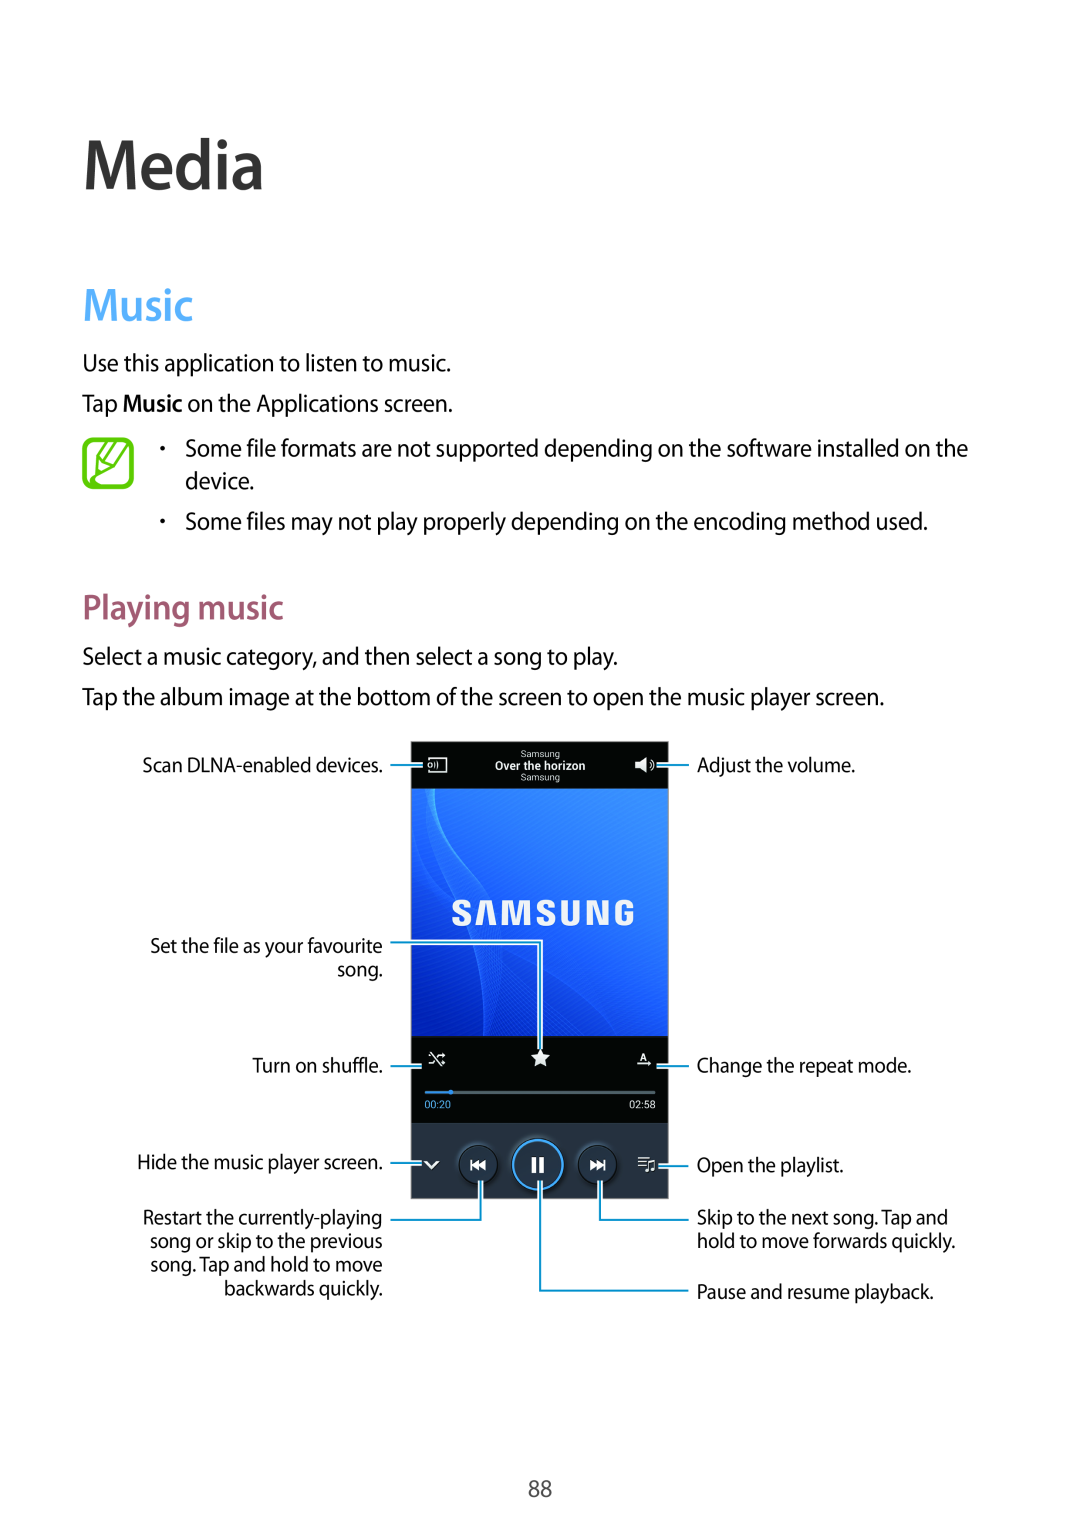 Samsung SM-N9005ZREAFR, SM-N9005ZKEEGY, SM-N9005ZIEEGY, SM-N9005ZIEKSA, SM-N9005WDEKSA manual Media, Music, Playing music 